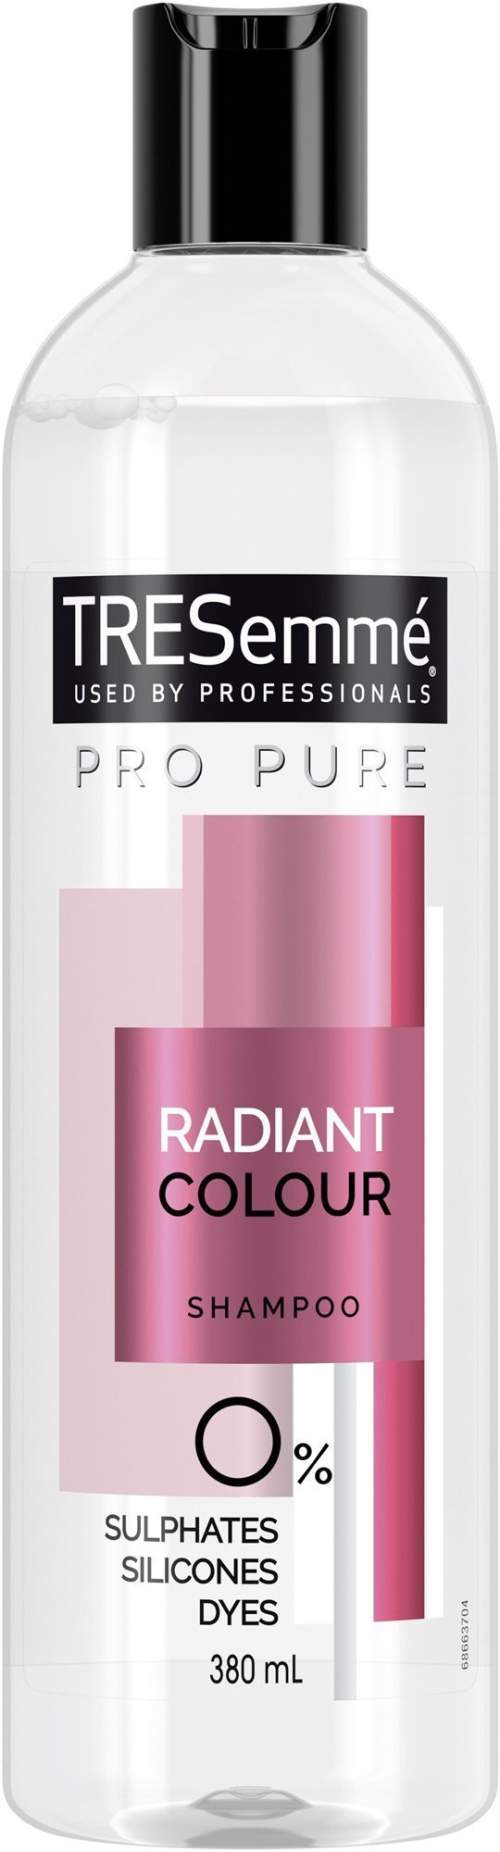 TRESemmé Pro Pure Radiant Colour šampon 380ml